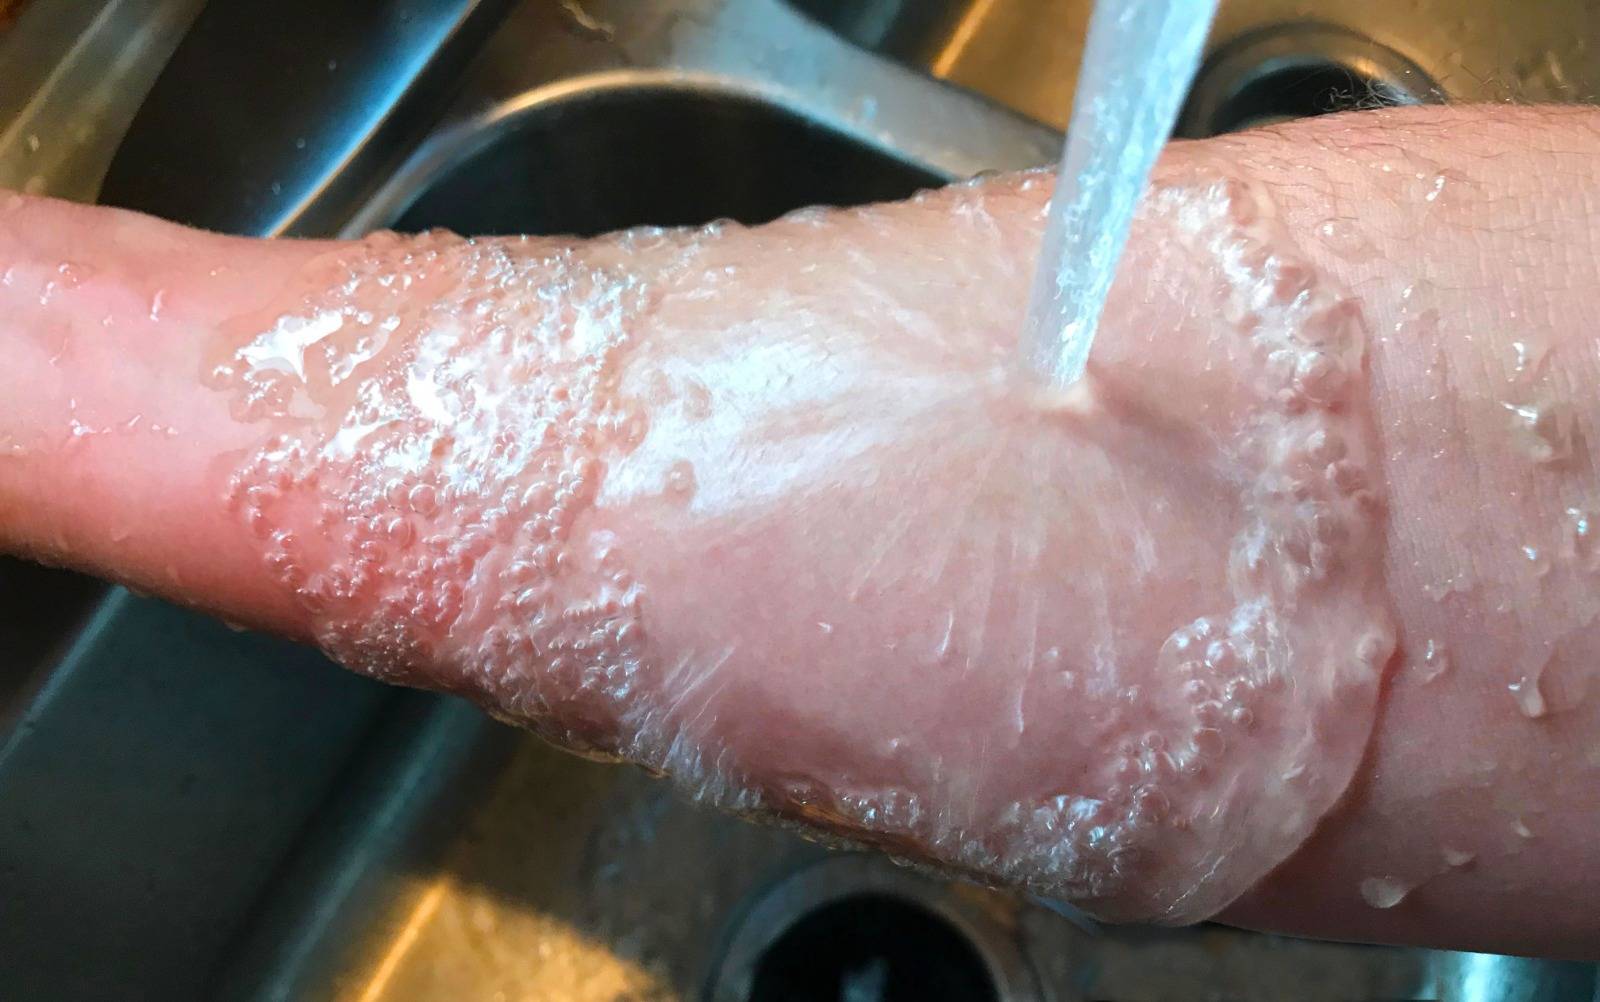 燙傷 將燙傷、燒傷的皮膚放在冷水中浸泡20分鐘，對治療燙傷或燒傷有很大的幫助。